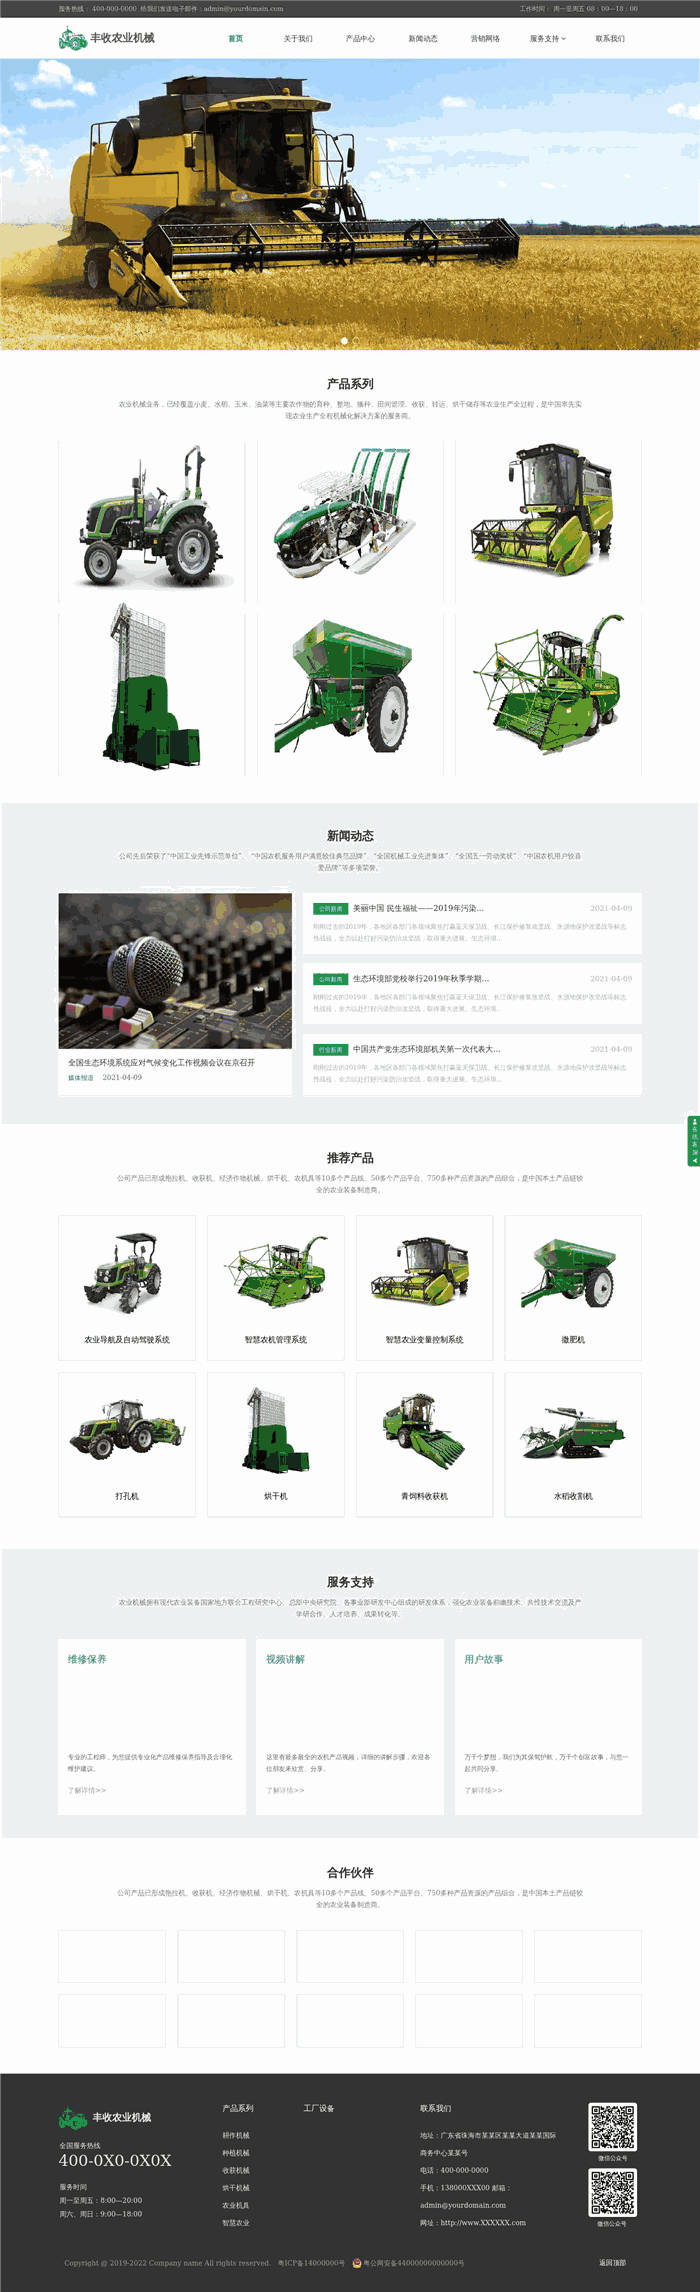 高端大气响应式机械设备丰收农业机械网站WordPress模板源码预览图